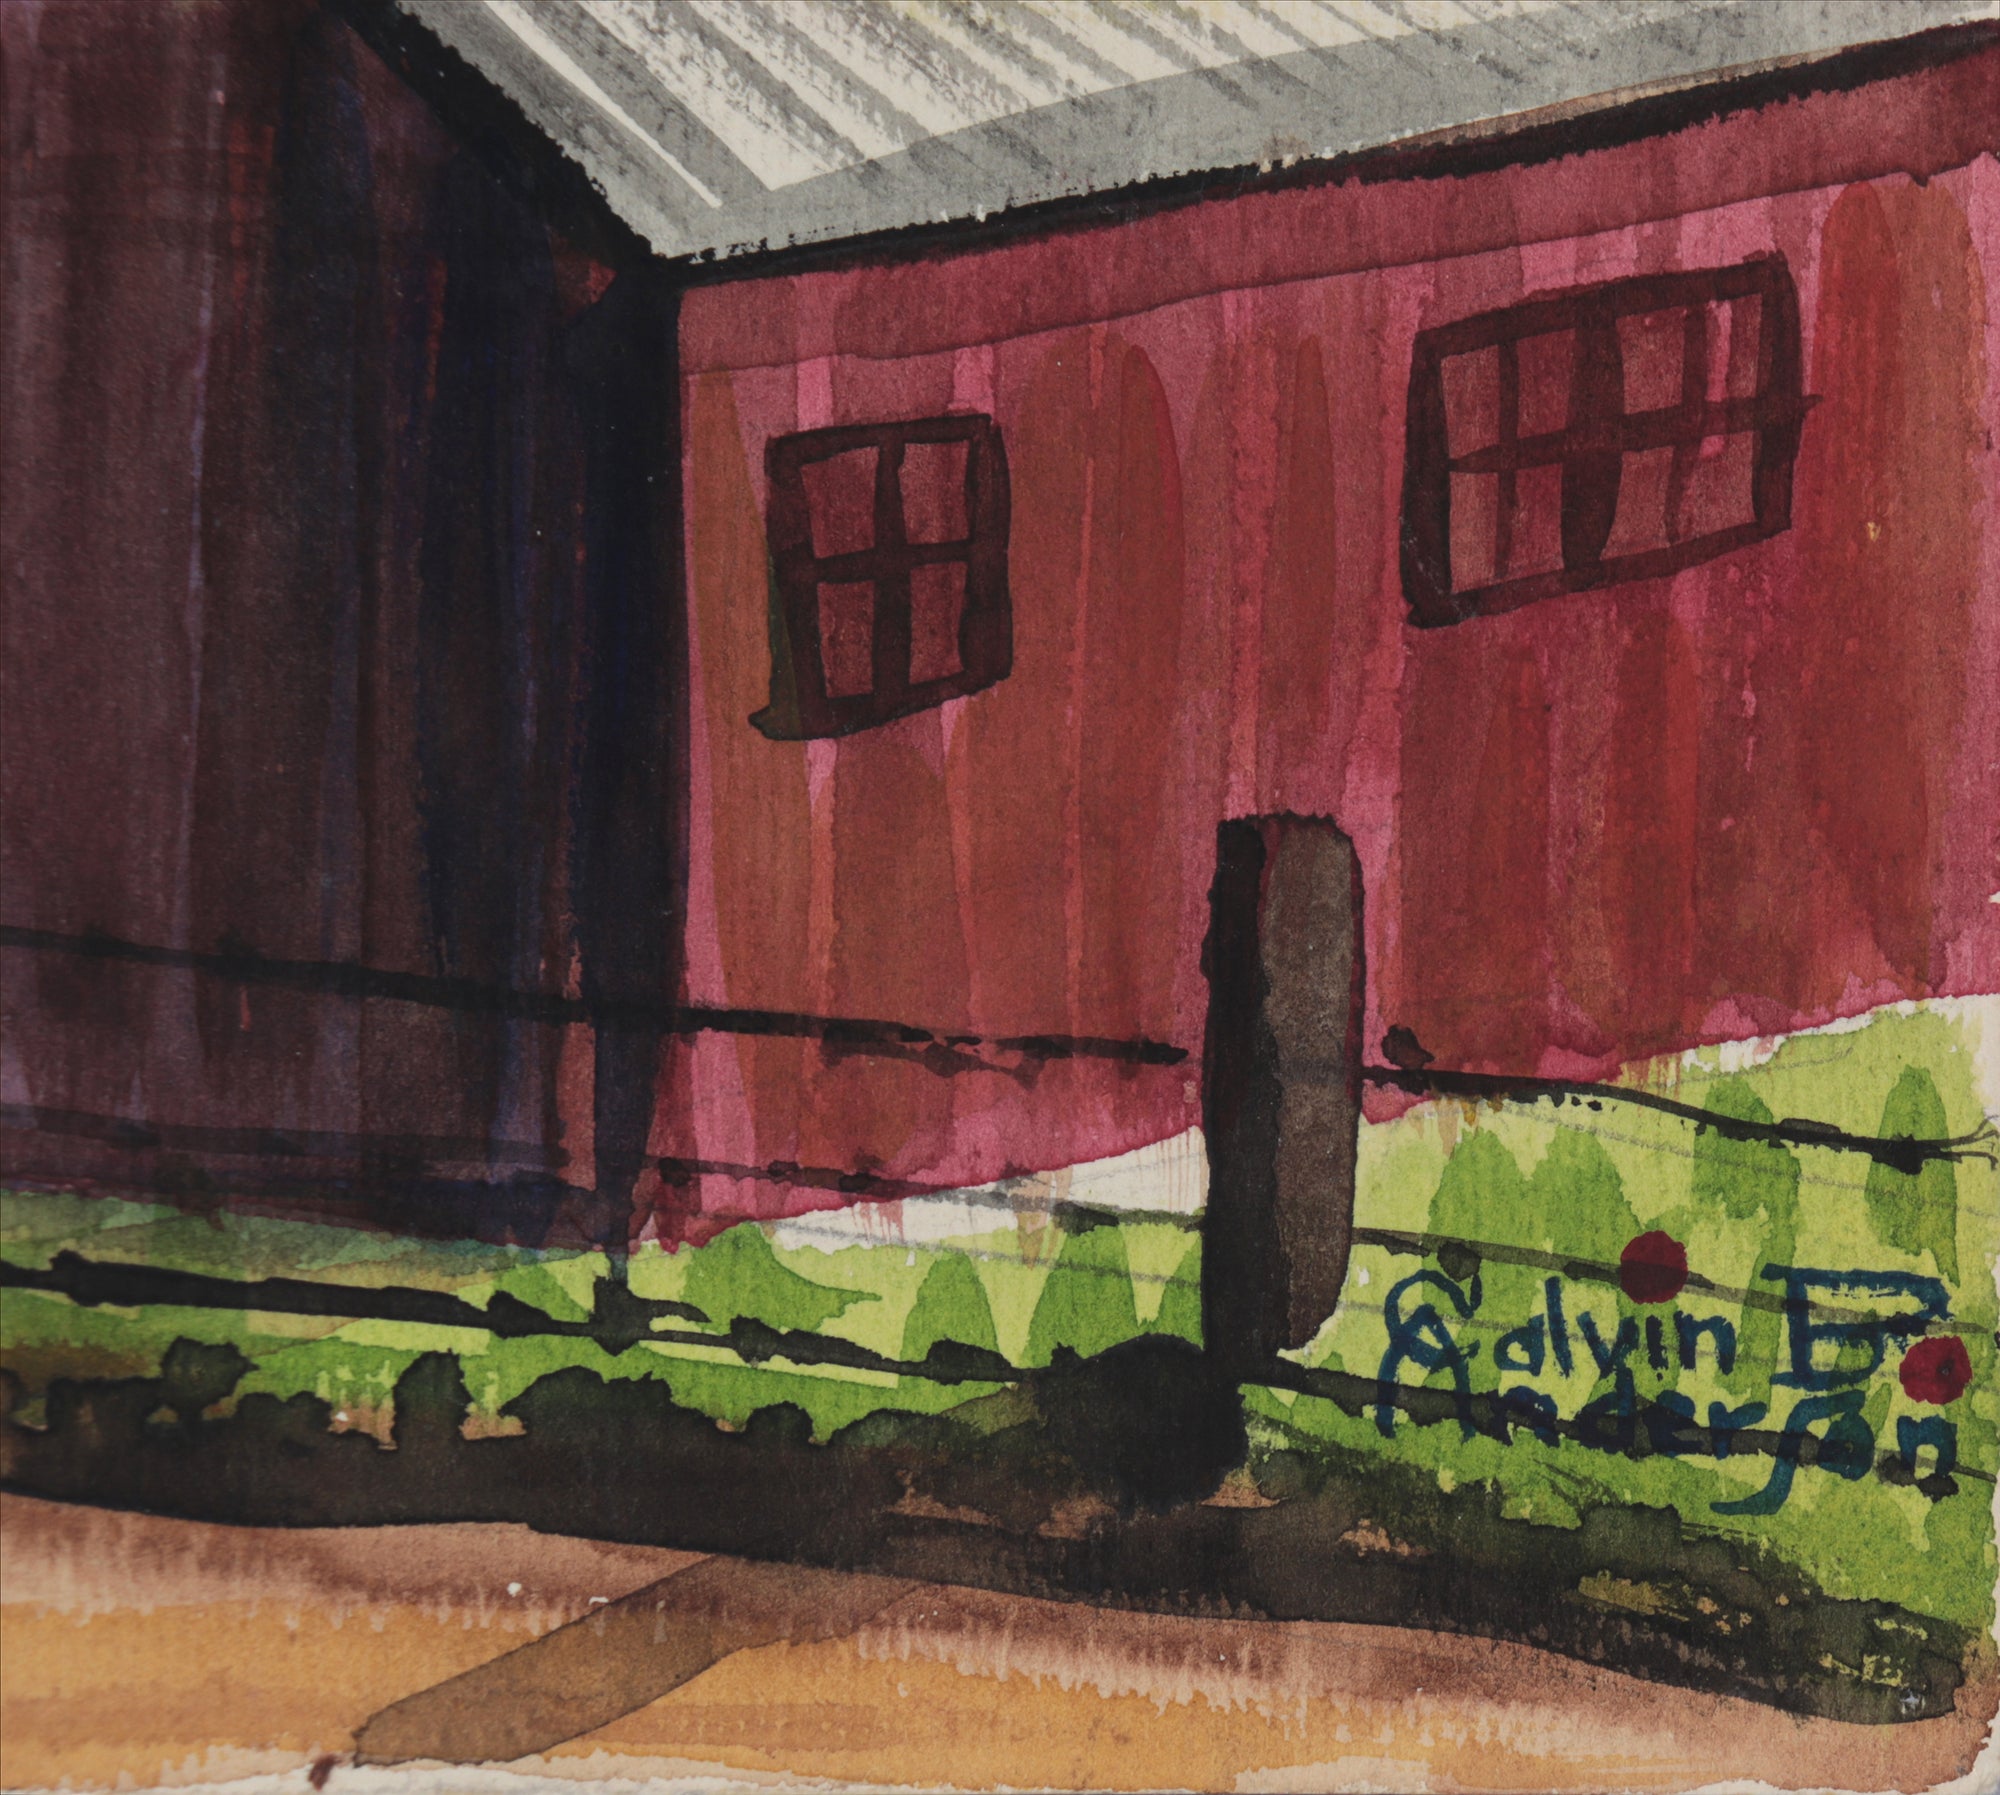 Idyllic Farm Scene <br>1942 Watercolor <br><br>#C4570